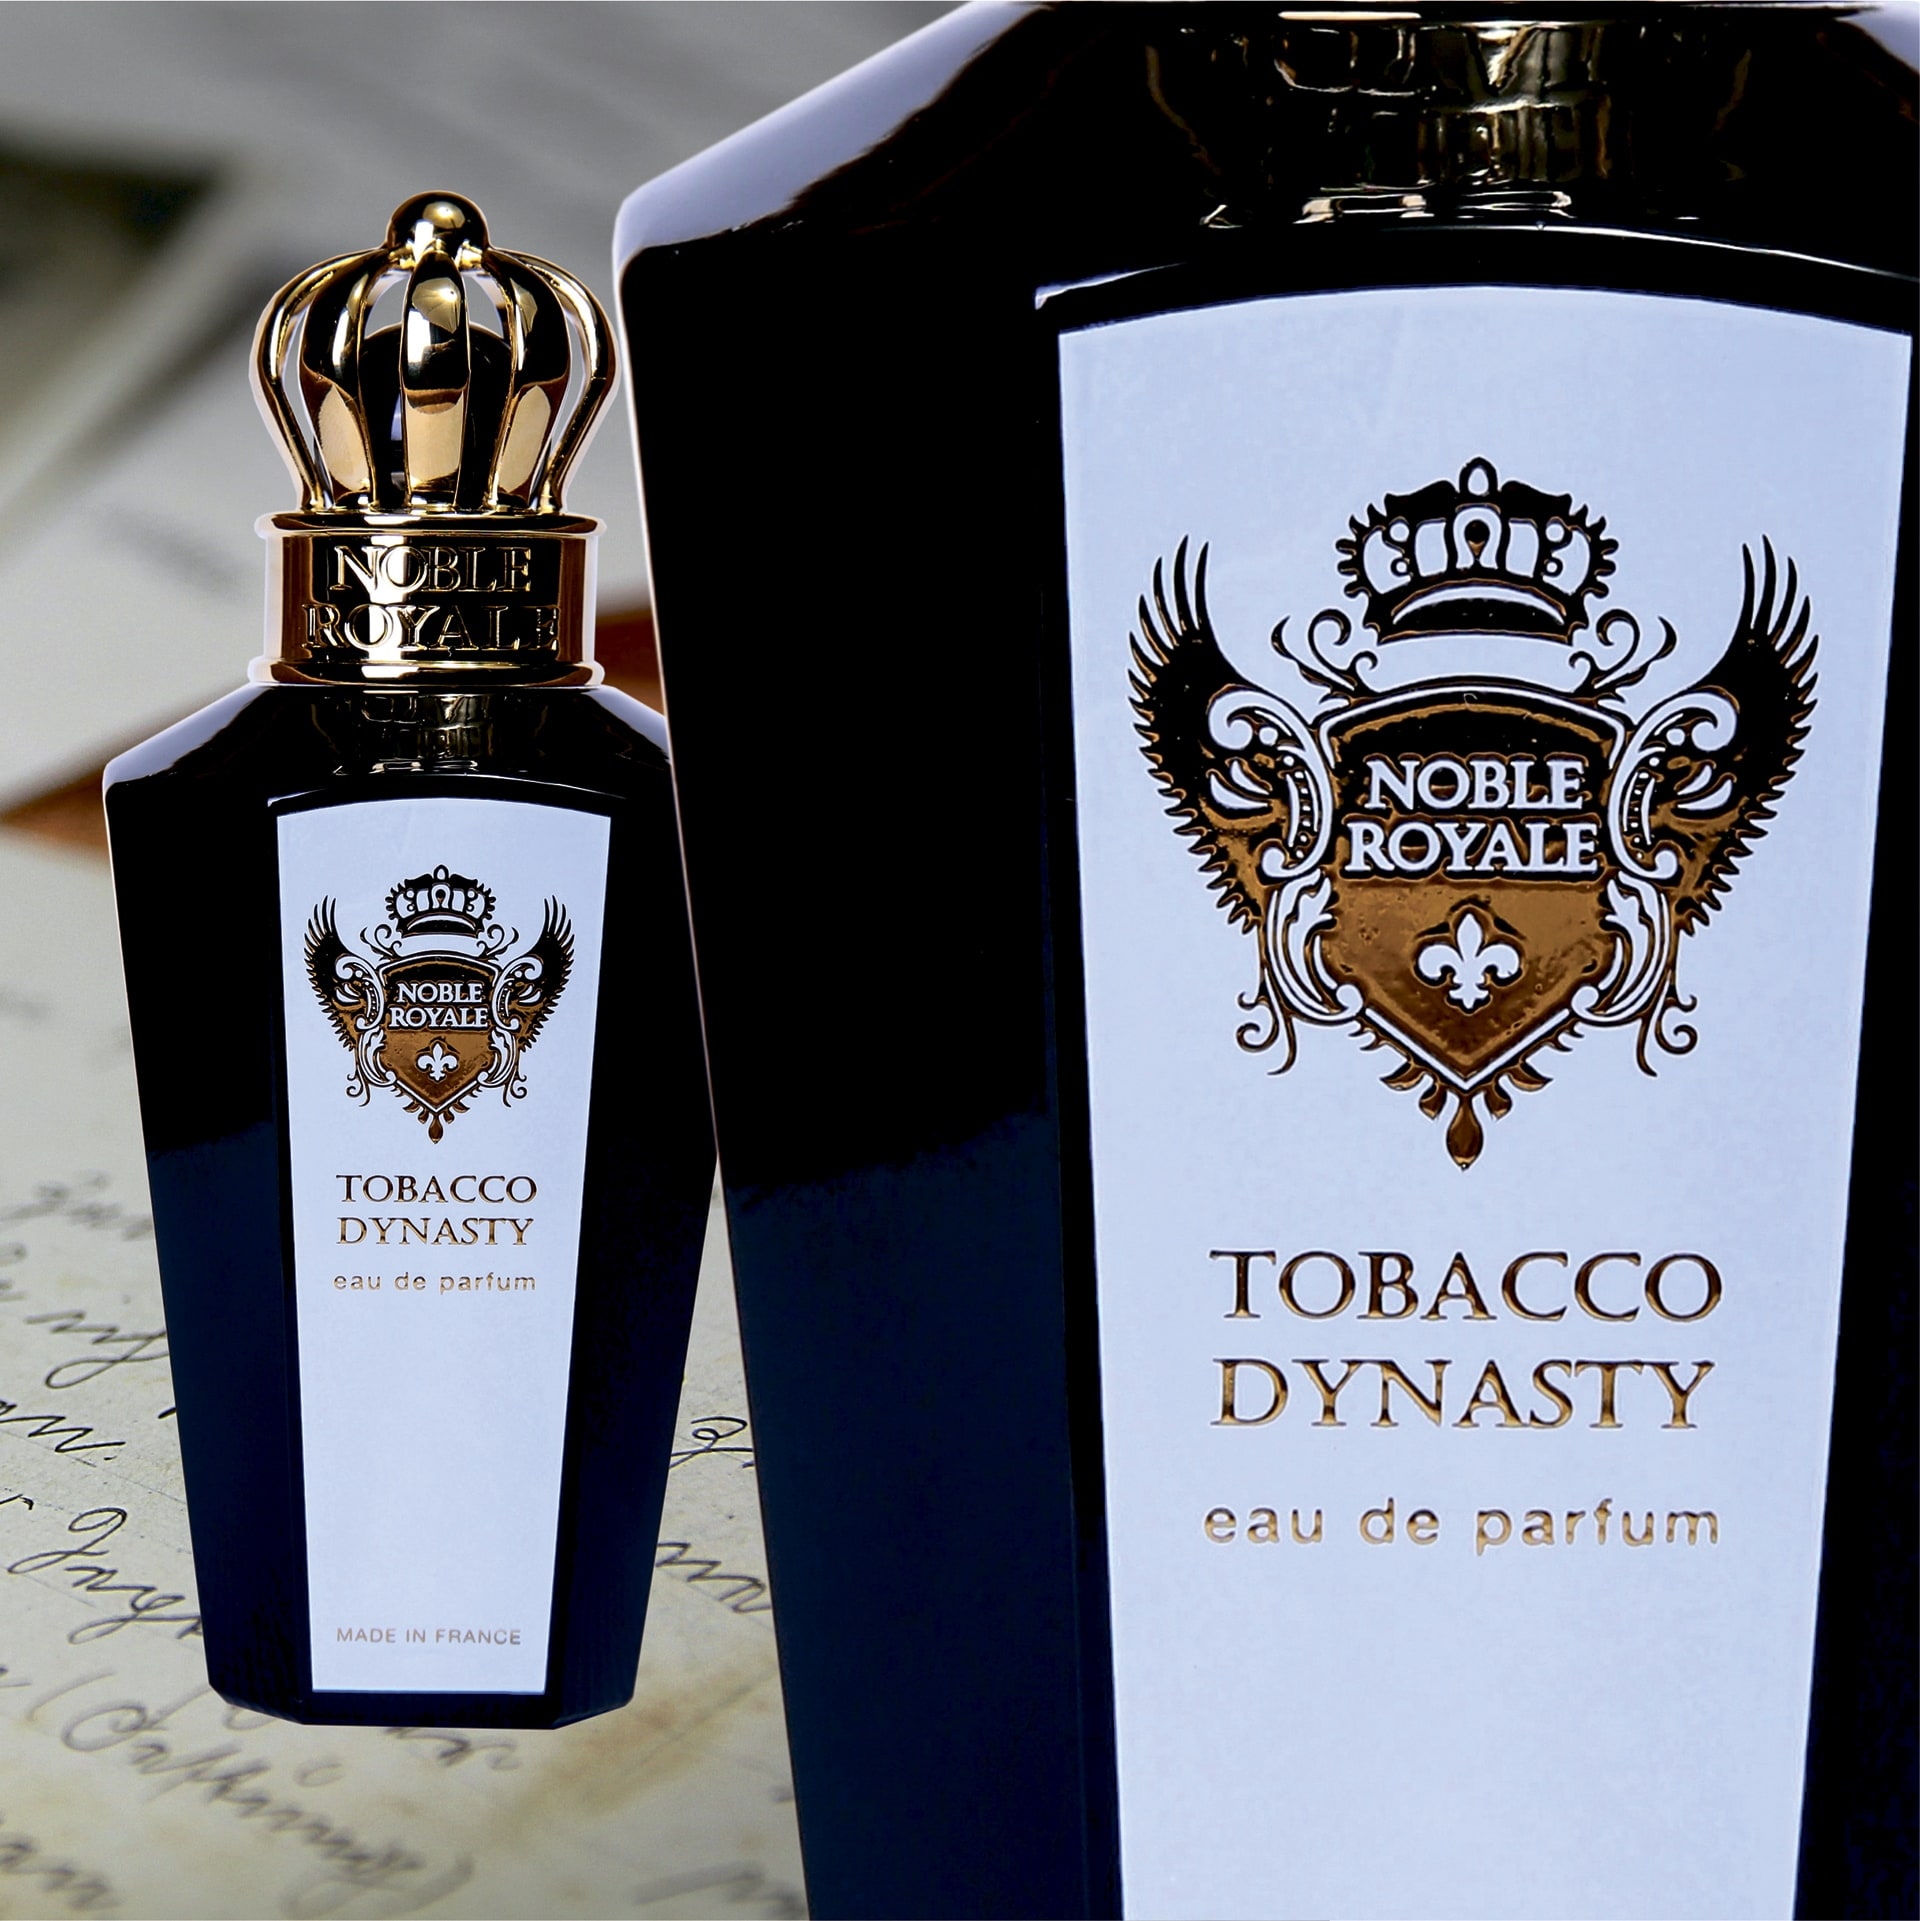 Tobacco Dynasty